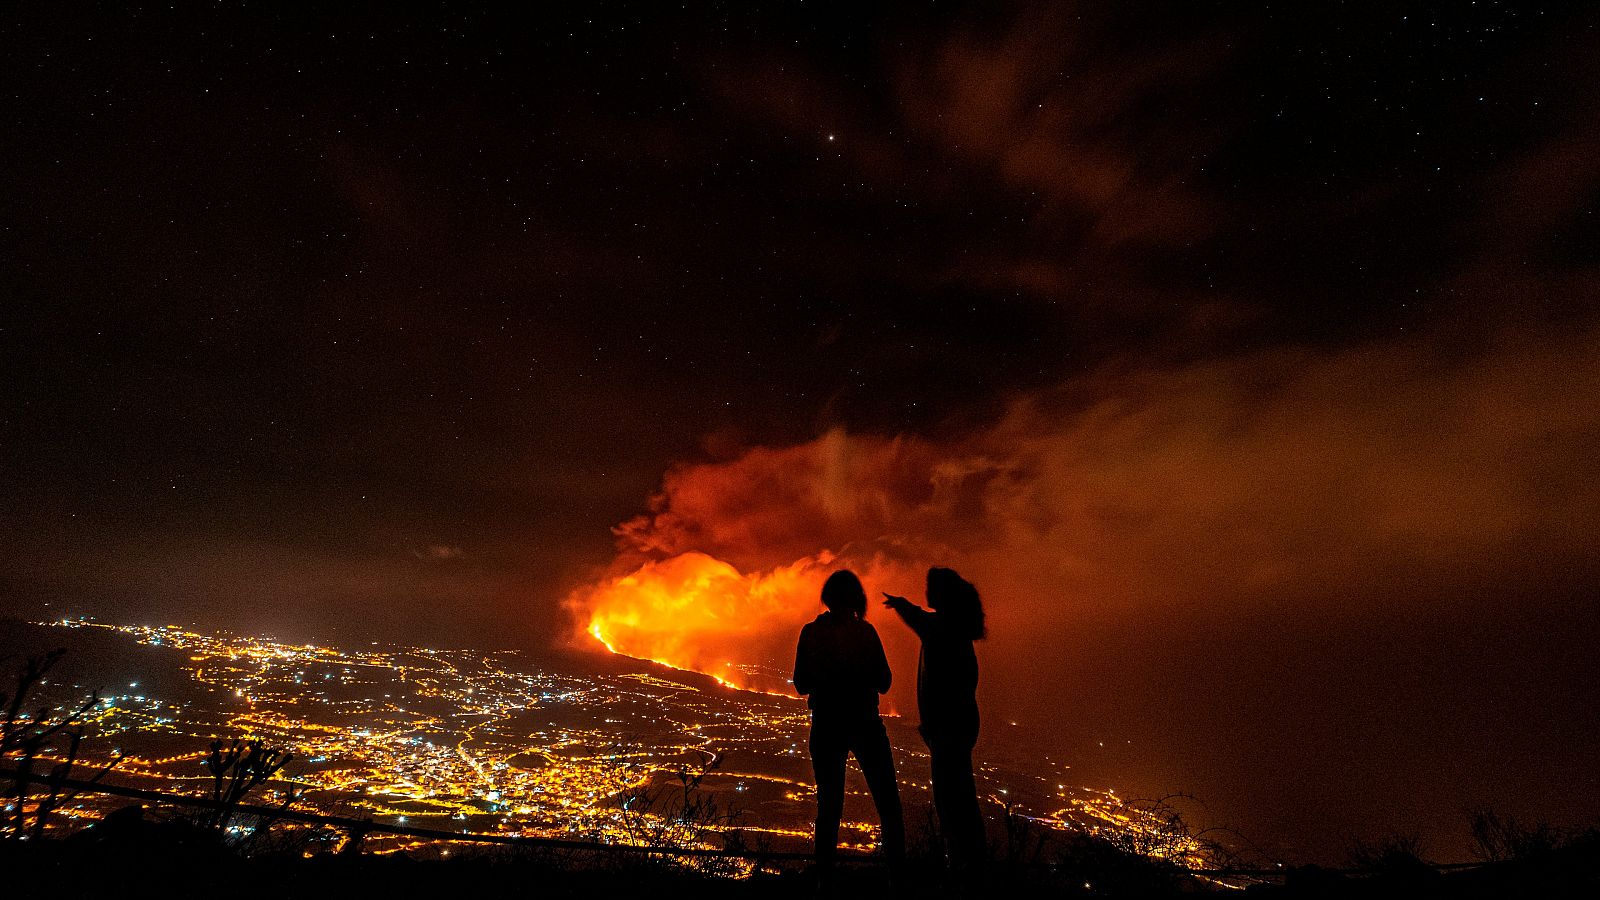 Dos jóvenes contemplan el Valle de Aridane, con la erupción volcánica al fondo.